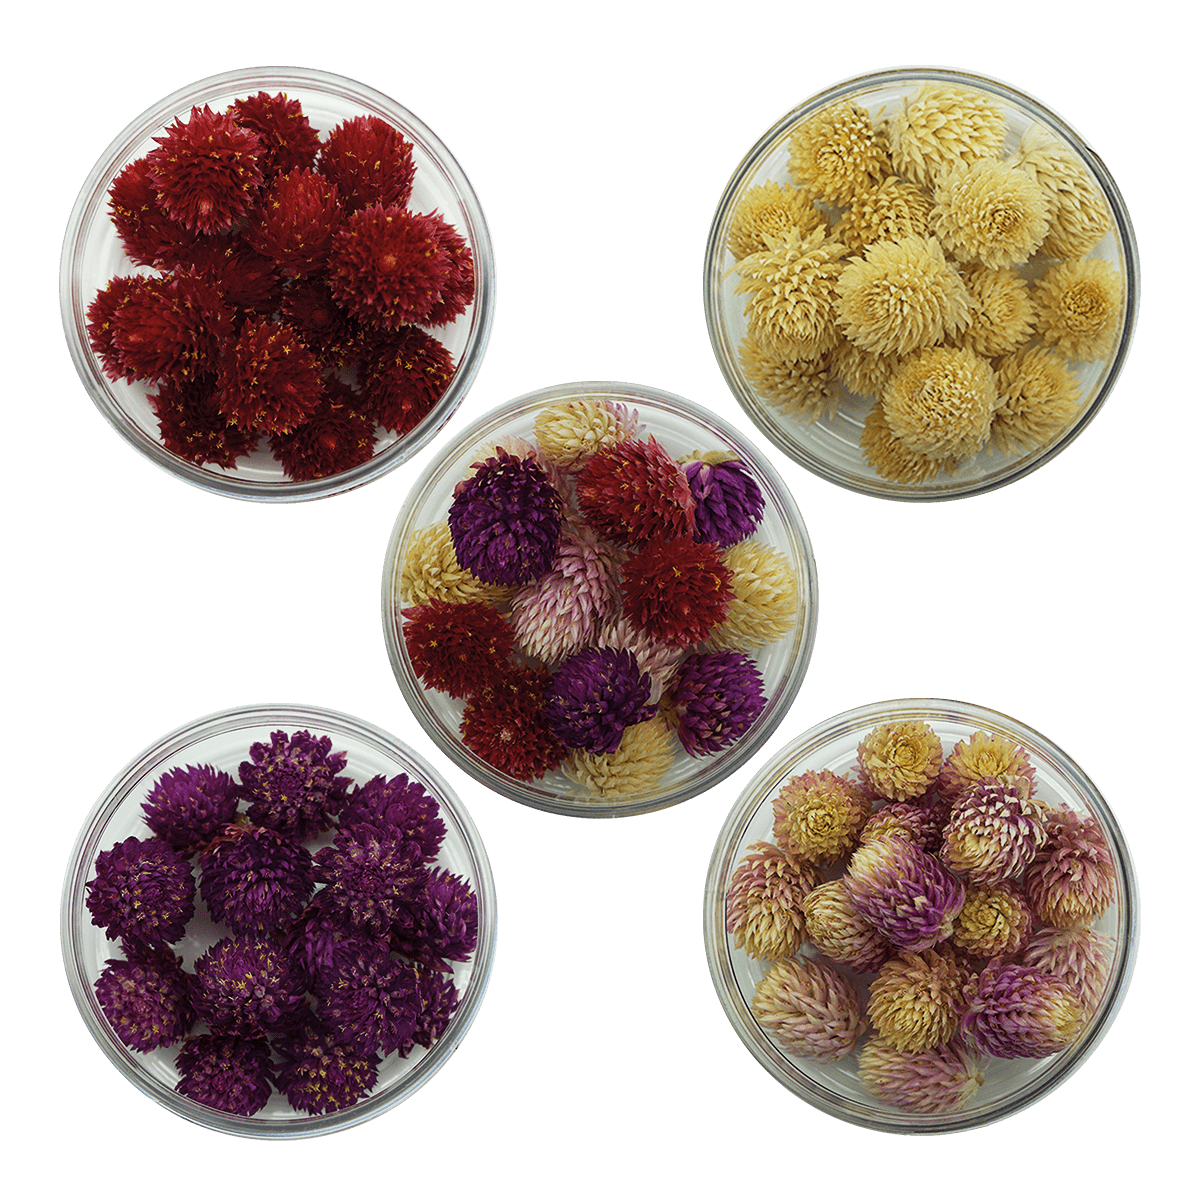 Unsere Kugelamaranten-Mischung ist eine Hommage an die Vielfalt der Natur. Mit einer Auswahl aus Weiß, Rosa, Rot und Lila bieten wir dir die Möglichkeit, deine kreativen Ideen in blühende Kunstwerke zu verwandeln. Diese handverlesenen Kugelamaranten sind von höchster Qualität und werden schonend getrocknet, um ihre lebhafte Farbpracht und natürliche Schönheit zu bewahren. Erschaffe magische Arrangements, die alle Blicke auf sich ziehen, oder füge diesen Blütenzauber deinen kulinarischen Kreationen hinzu. 